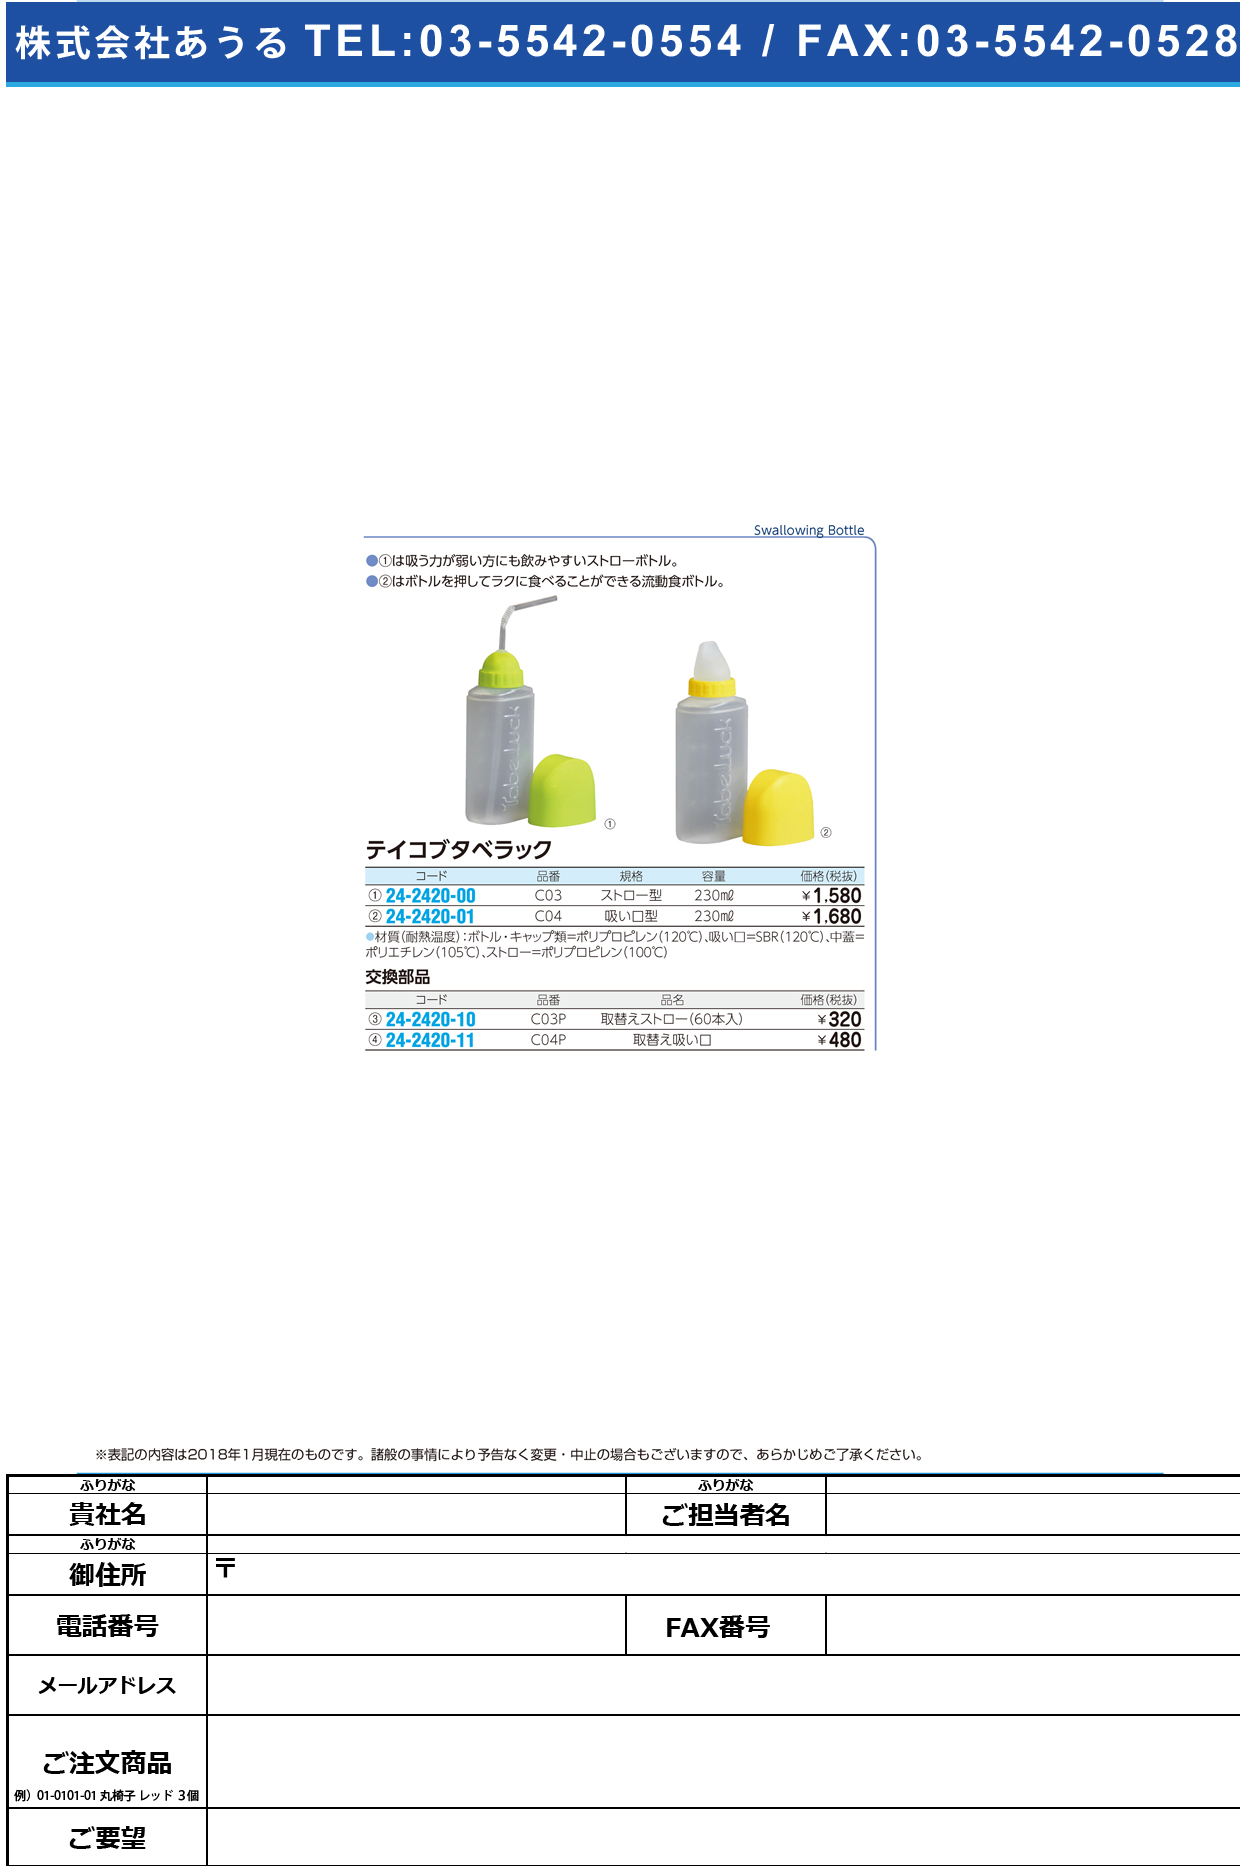 (24-2420-10)テイコブタベラック取替えストロー C03P(60ﾎﾝｲﾘ) ﾃｲｺﾌﾞﾀﾍﾞﾗｯｸﾄﾘｶｴｽﾄﾛｰ【1袋単位】【2019年カタログ商品】